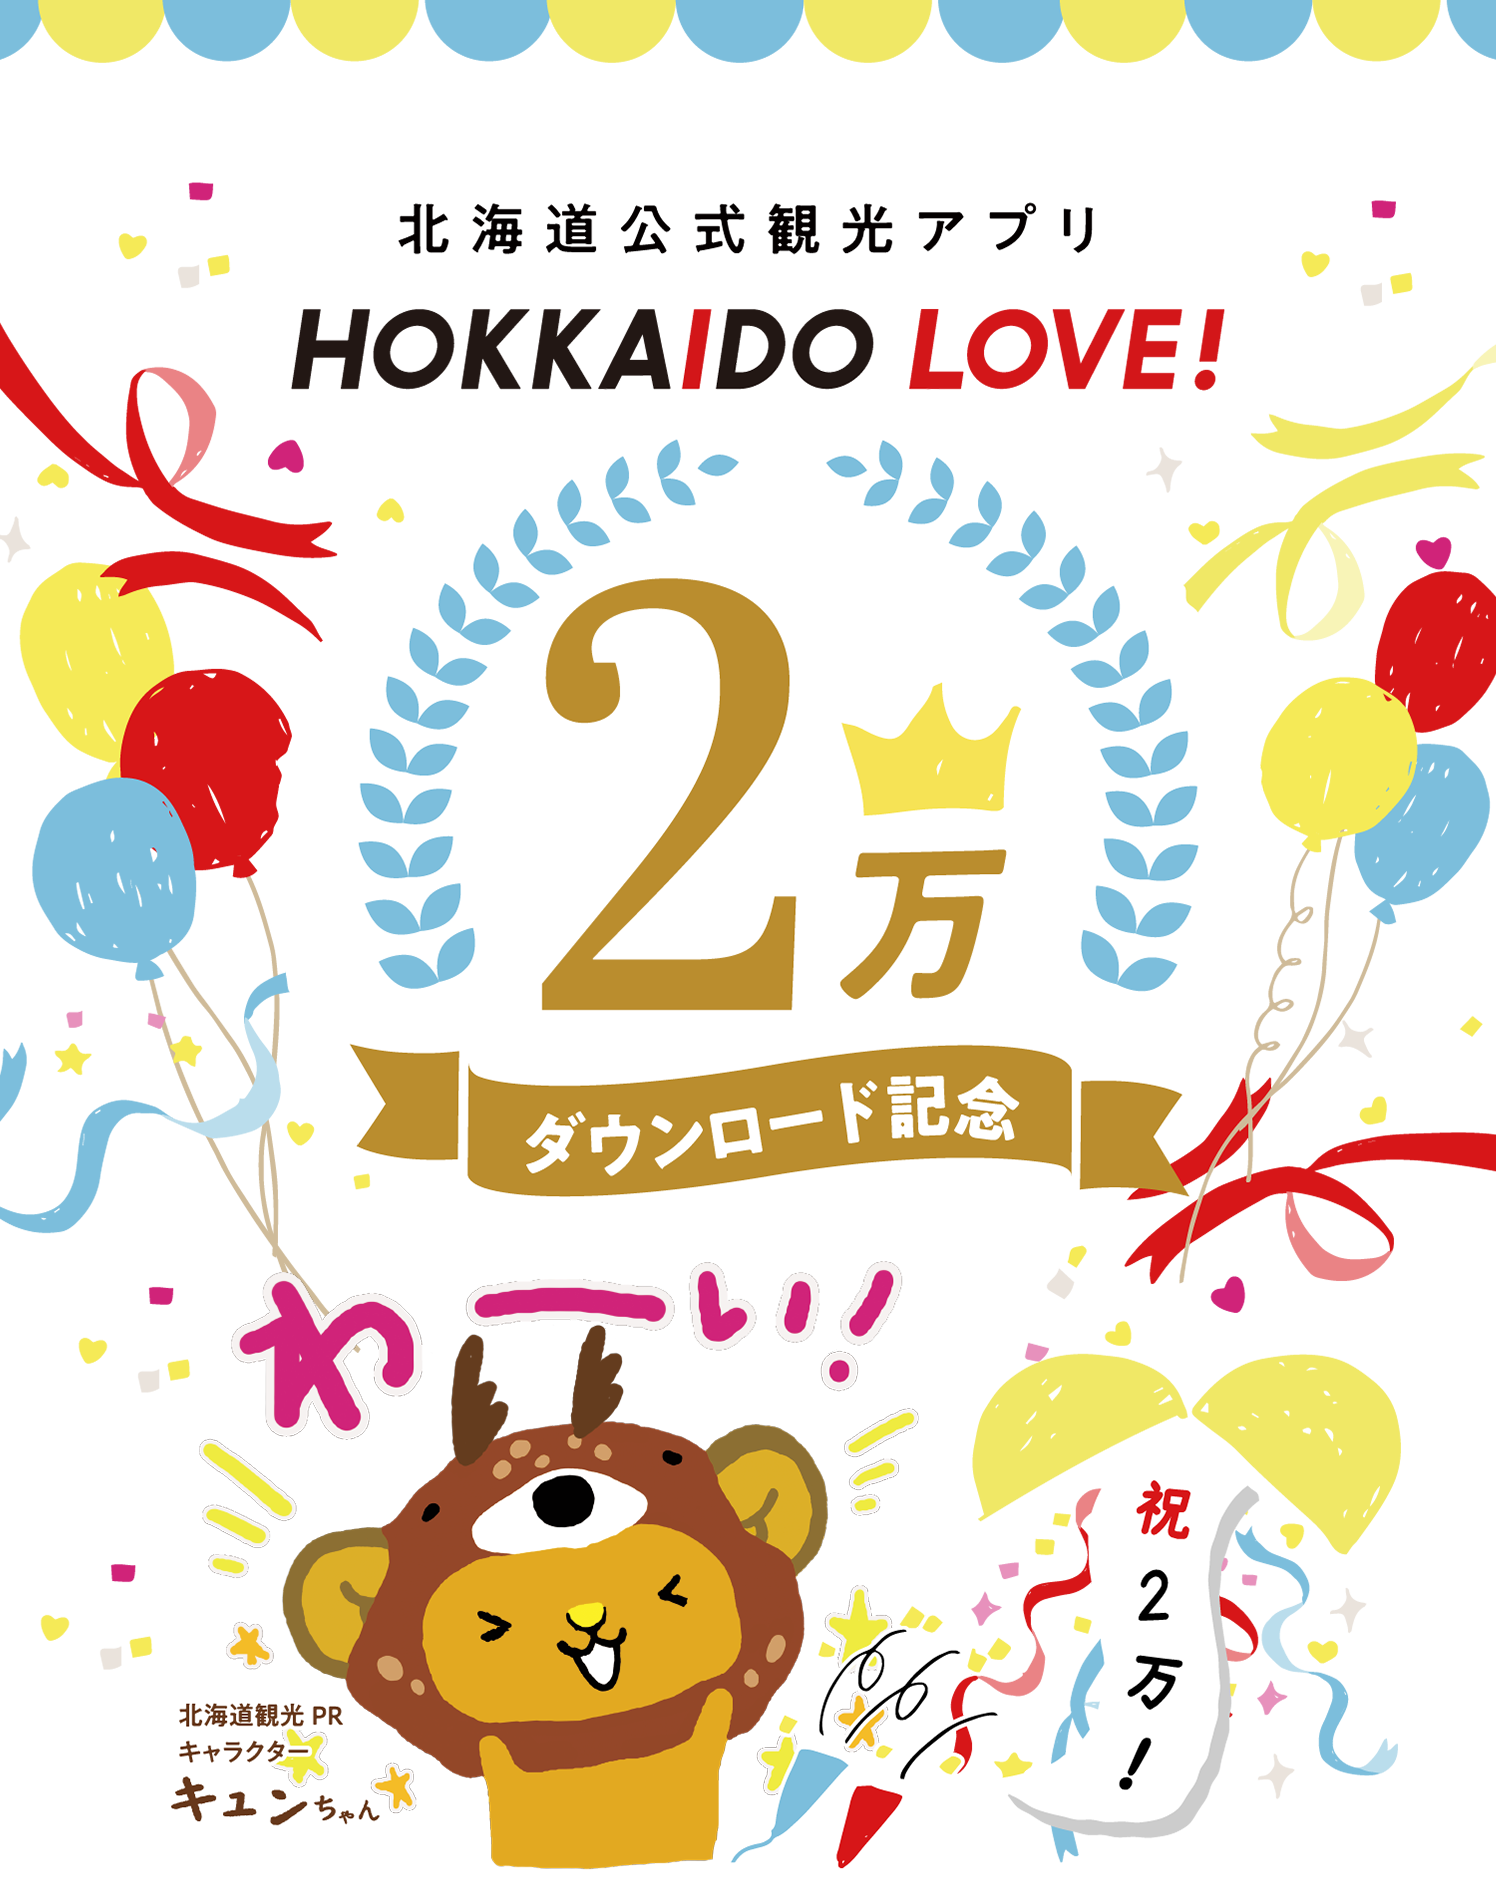 メインバナー 北海道公式観光アプリ HOKKAIDO LOVE! 2万ダウンロード記念